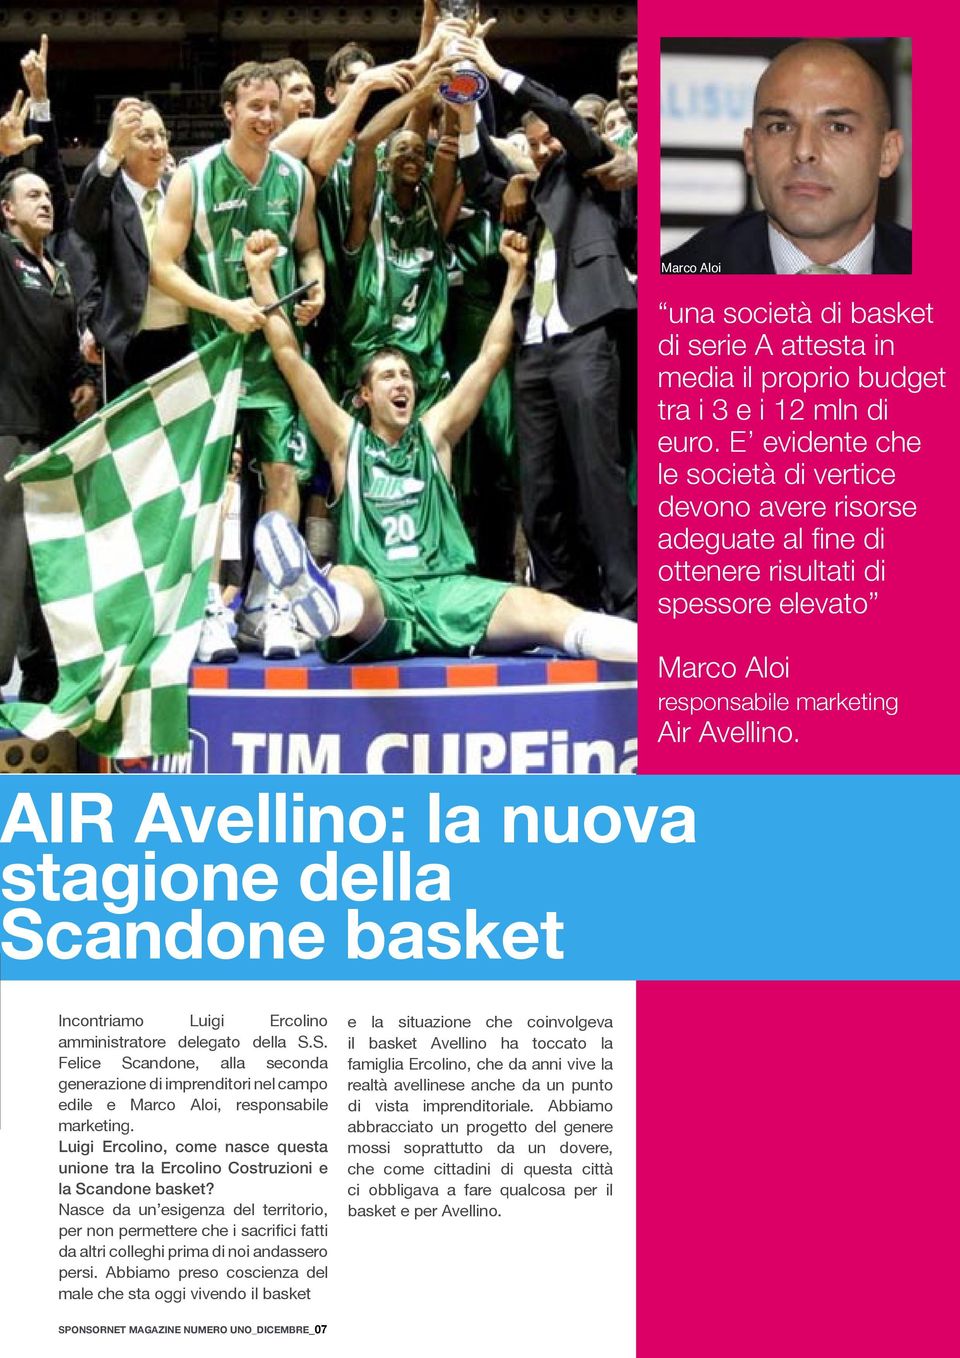 AIR Avellino: la nuova stagione della Scandone basket Incontriamo Luigi Ercolino amministratore delegato della S.S. Felice Scandone, alla seconda generazione di imprenditori nel campo edile e Marco Aloi, responsabile marketing.